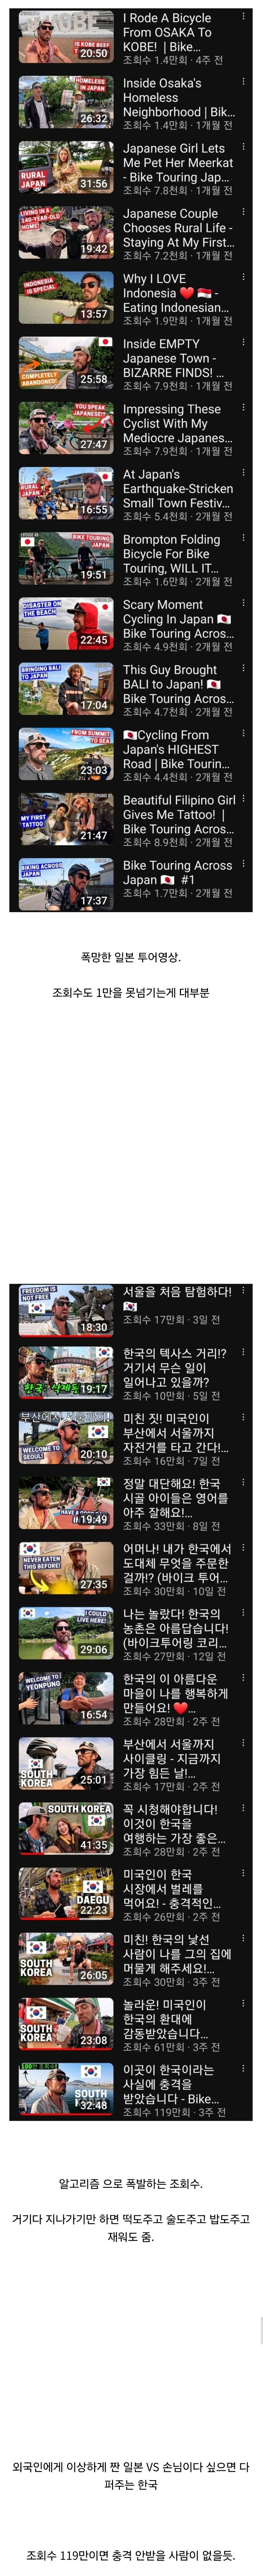 한국여행으로 떡상했다는 유튜버.jpg